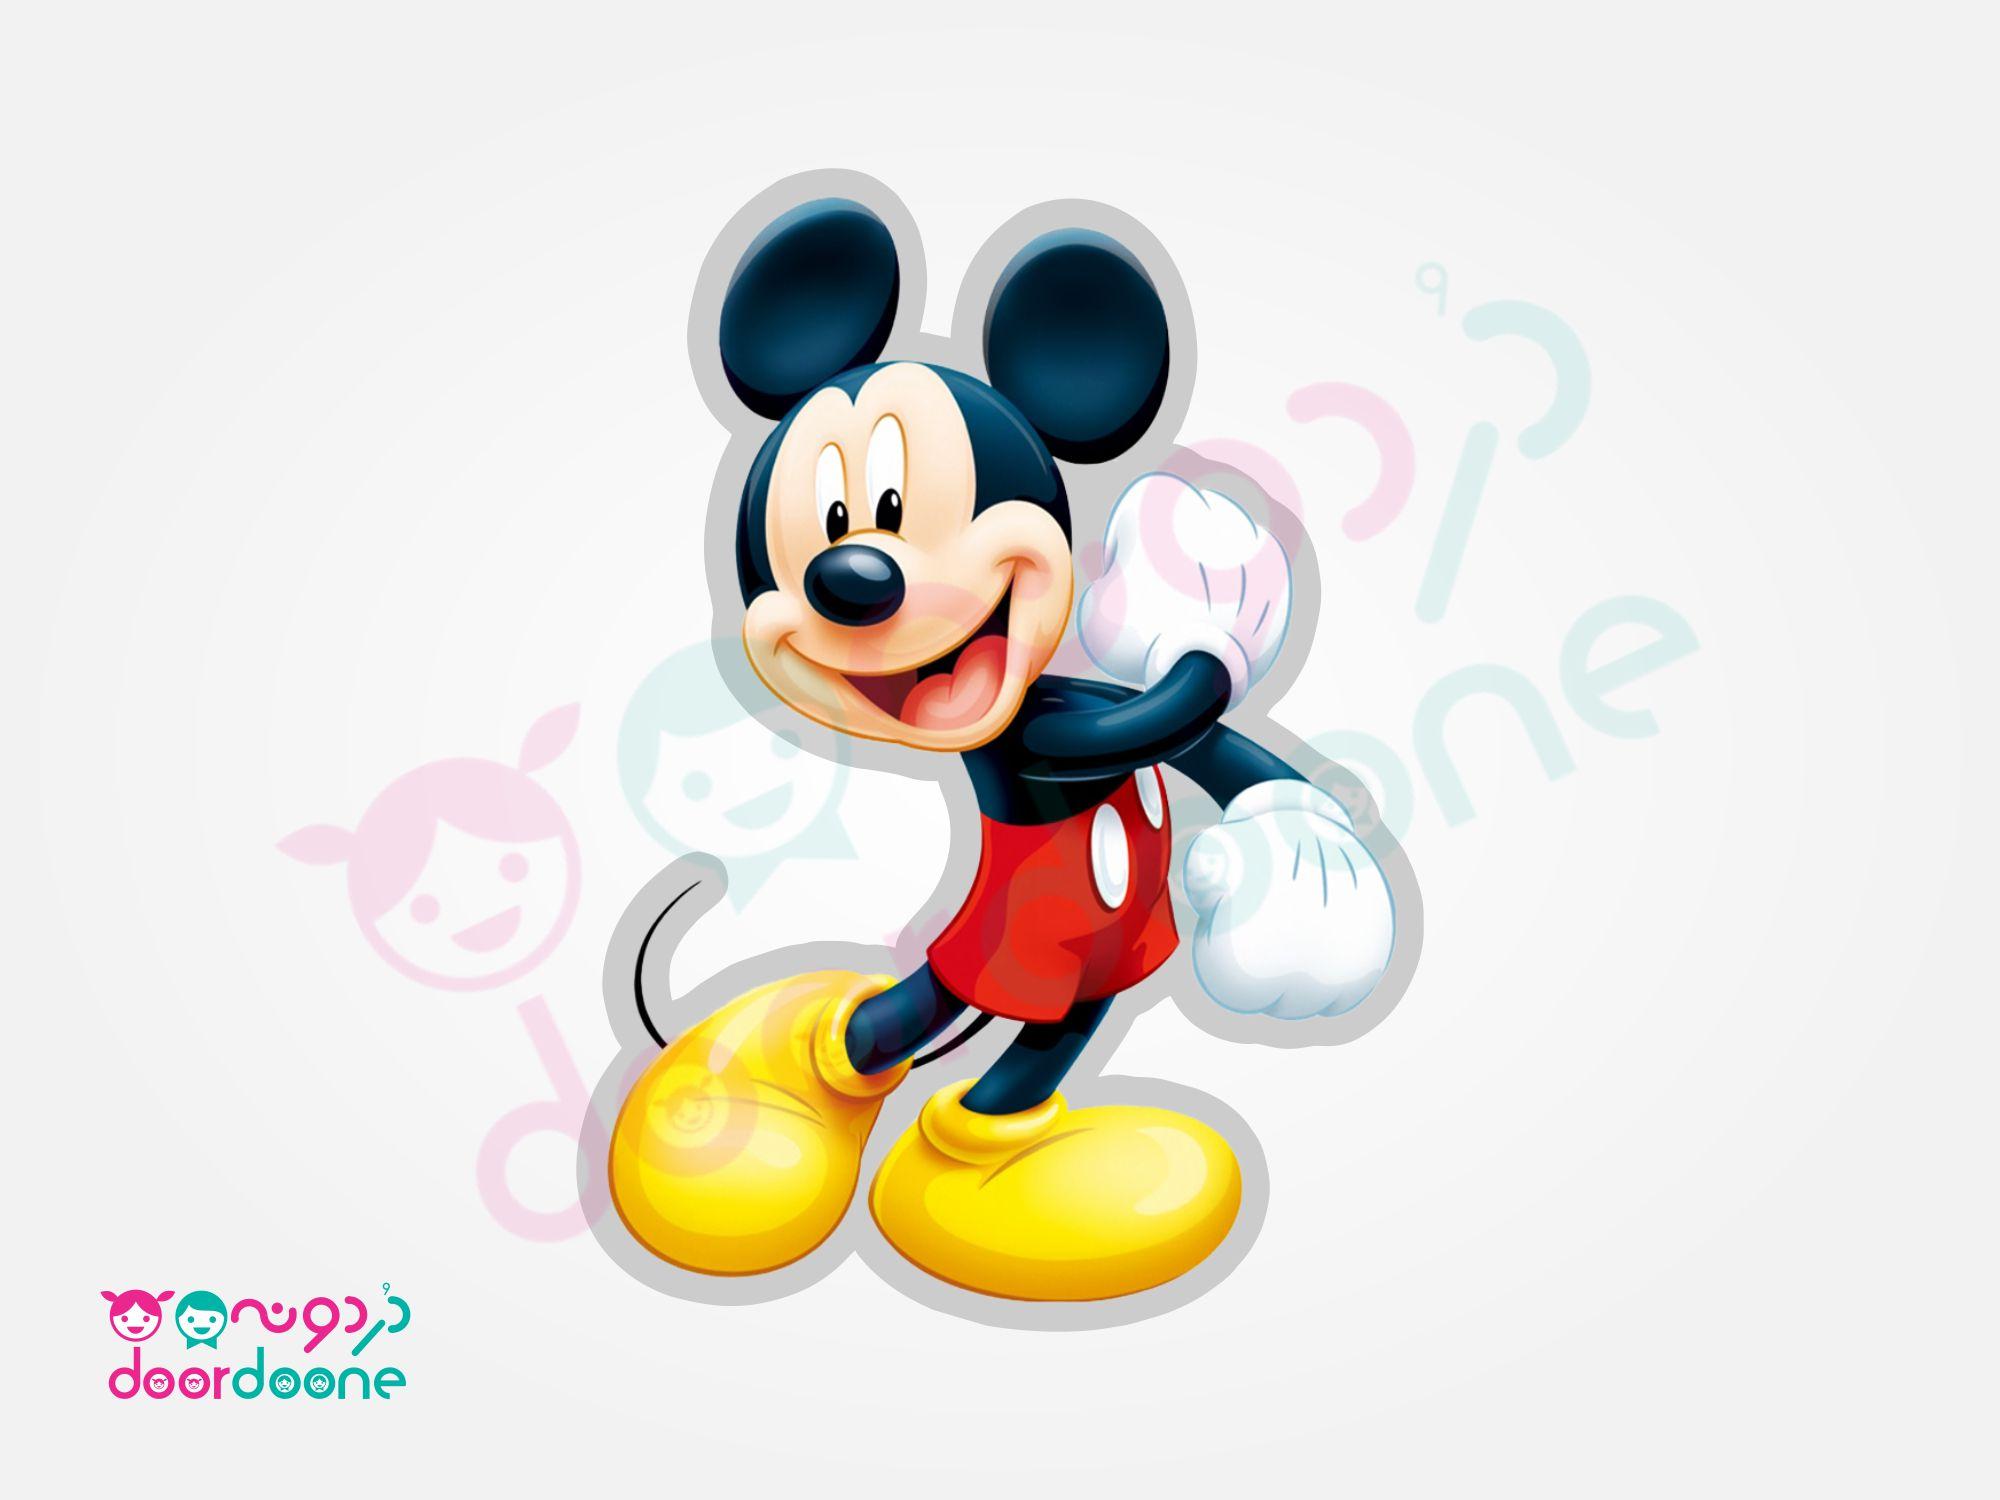 استند ميکی ماوس (Mikey Mouse) - ارتفاع 35 سانتيمتر